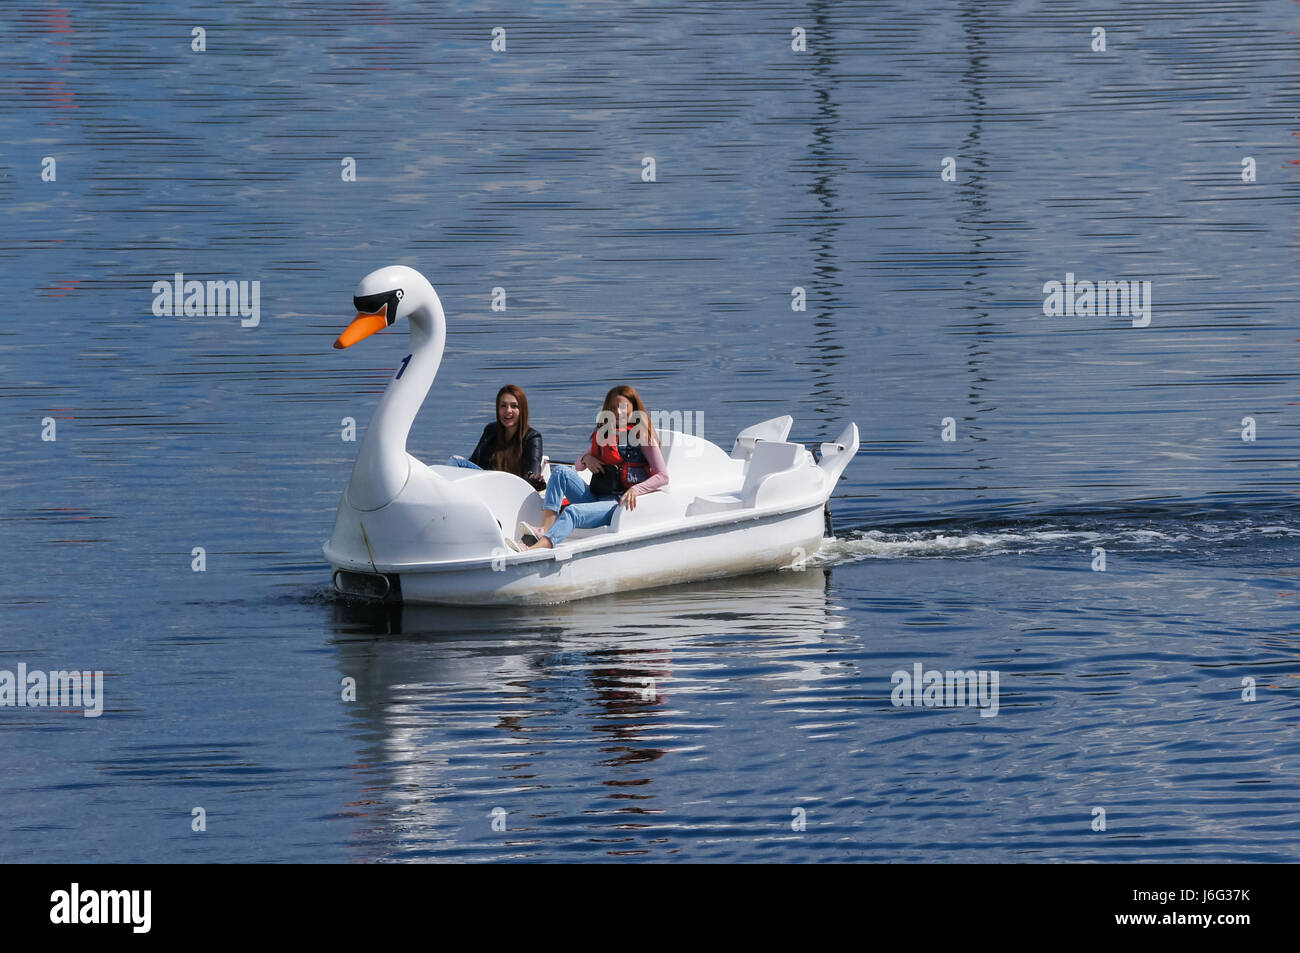 Die Menschen genießen heißen Tag in Swan Tretboote am Fluss Lea im Queen Elizabeth Olympic Park, London England United Kingdom UK Stockfoto